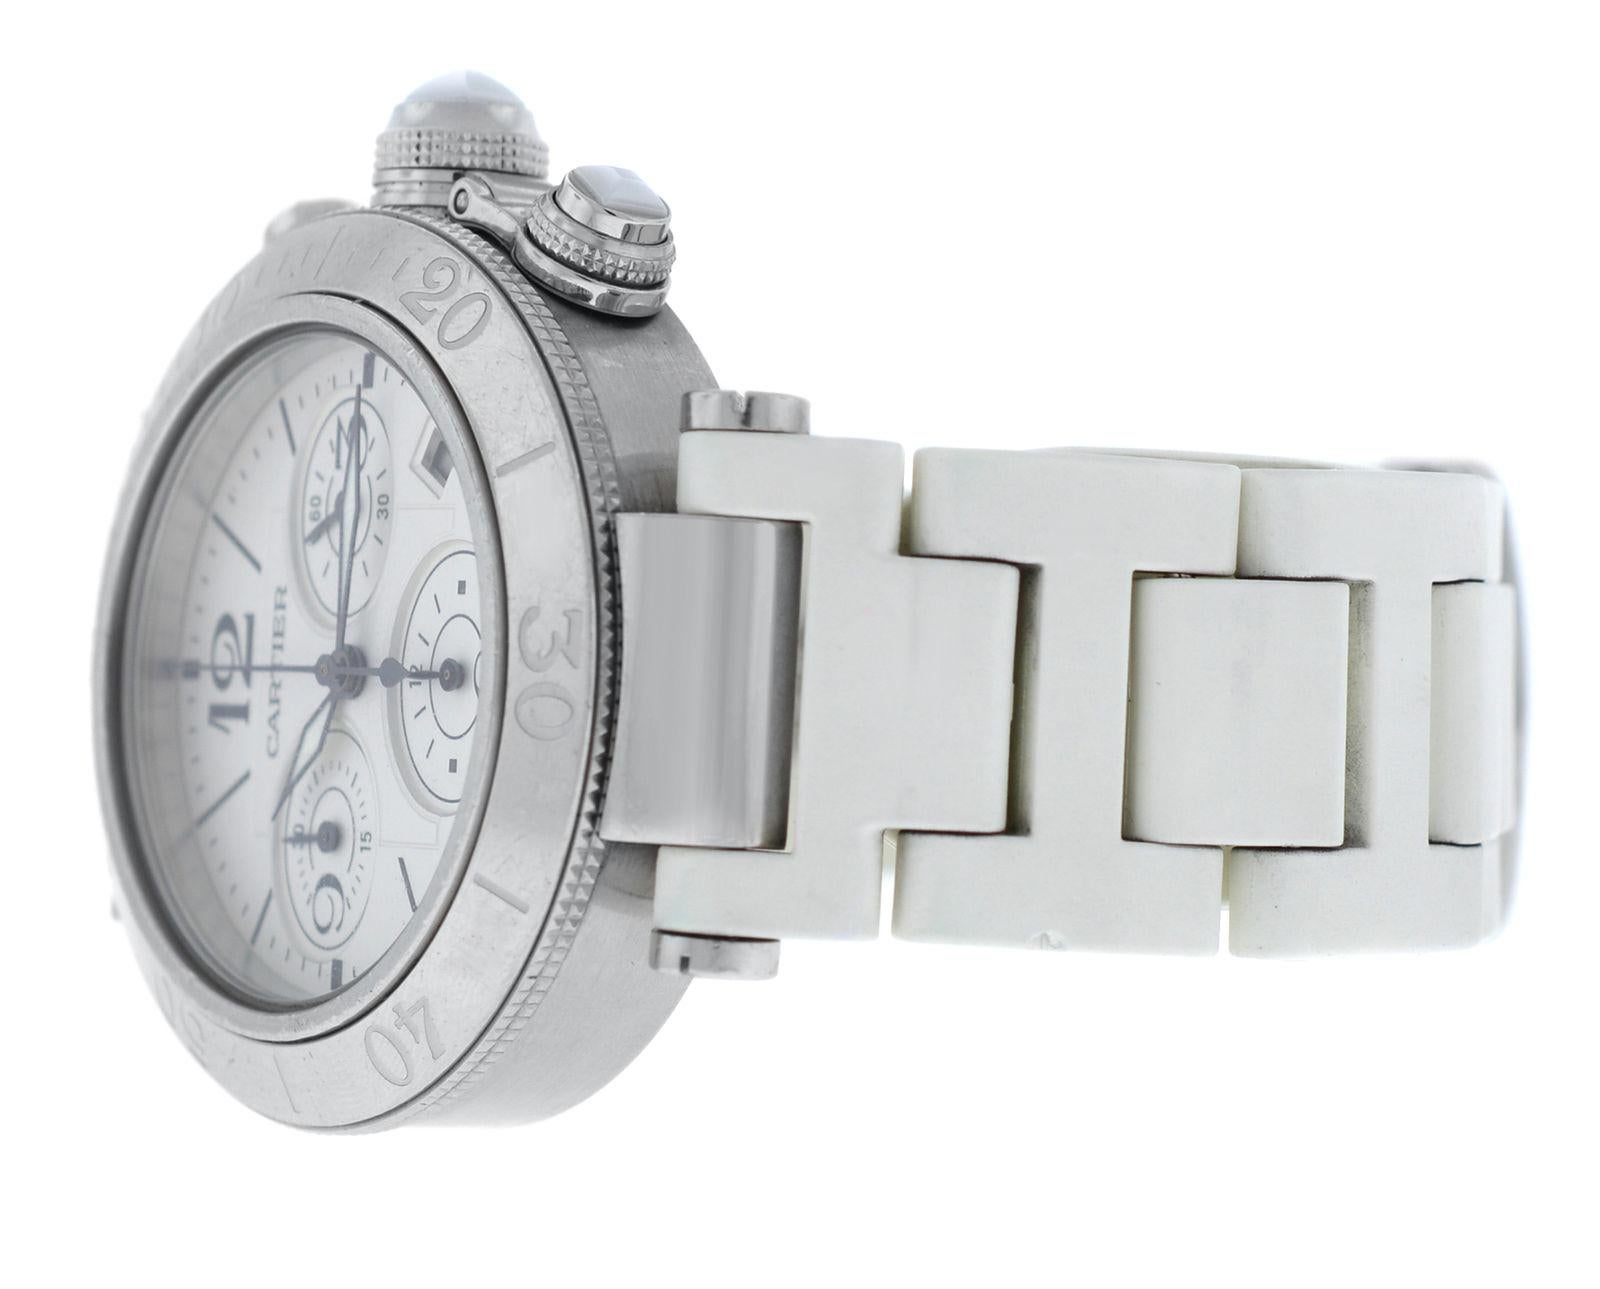 Authentic Unisex Cartier Pasha Steel Date Quartz Chronograph Watch For Sale 6